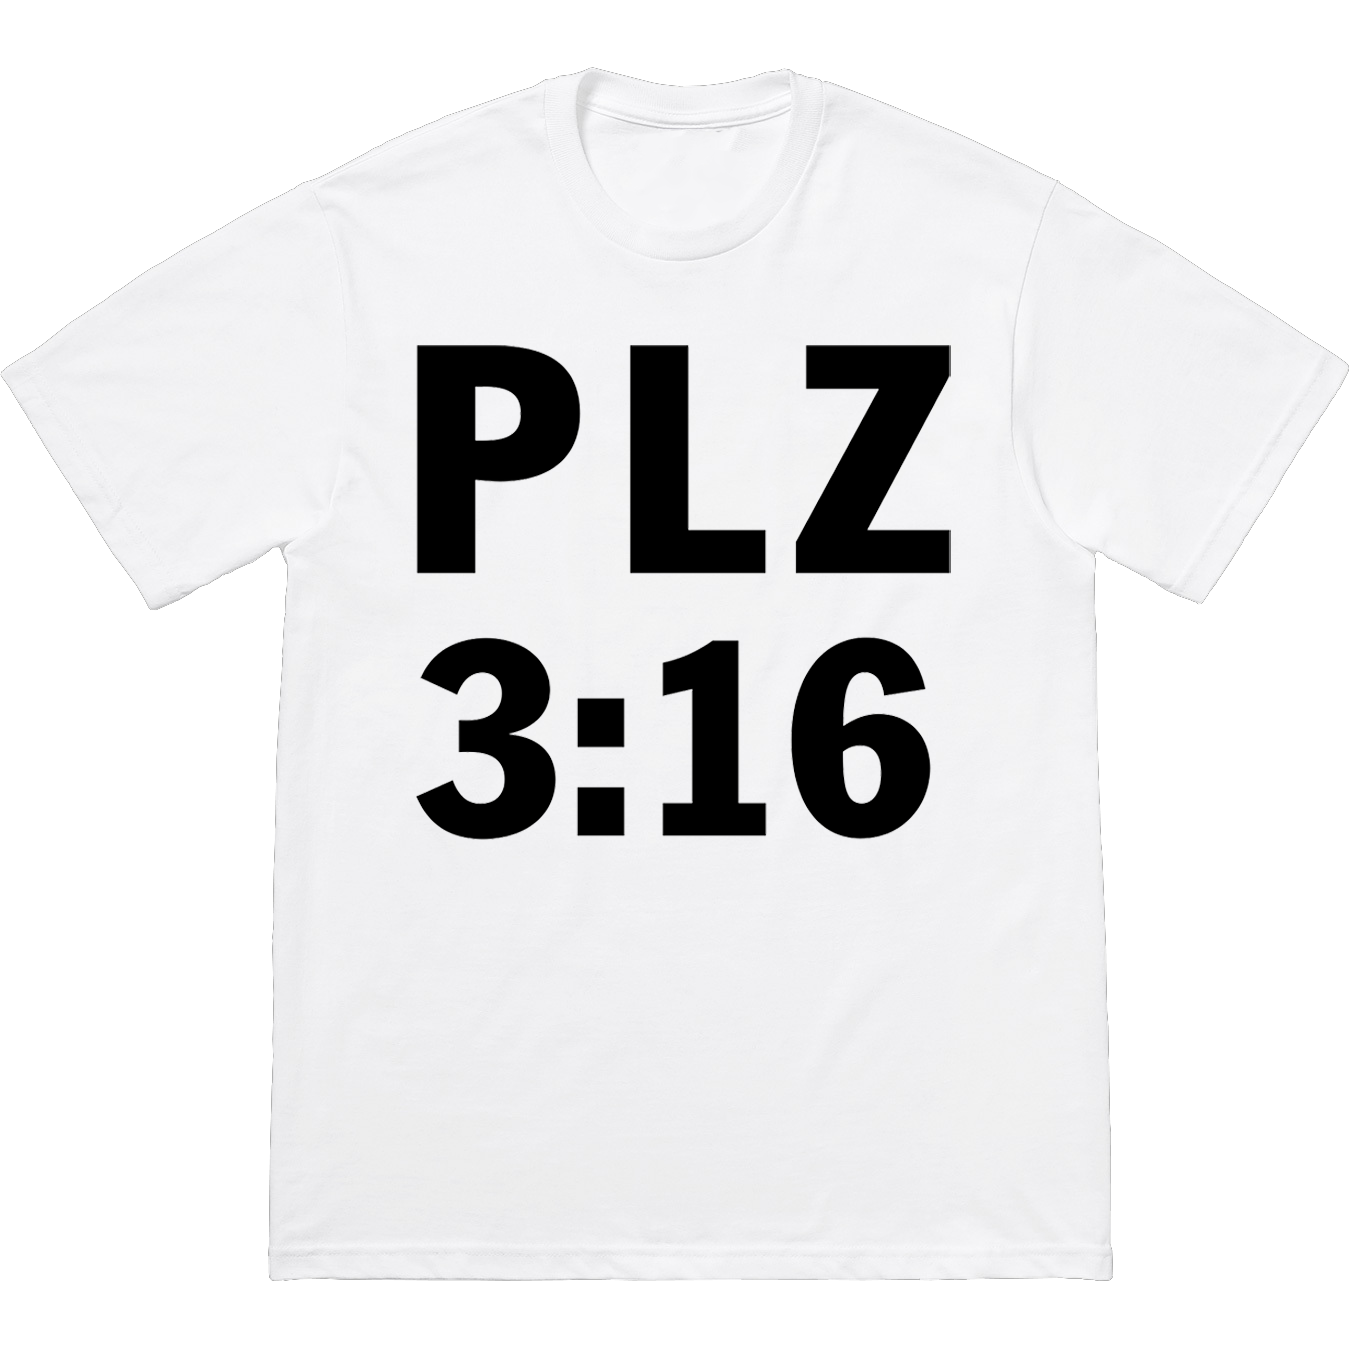 PLZ 3:16 T-Shirt